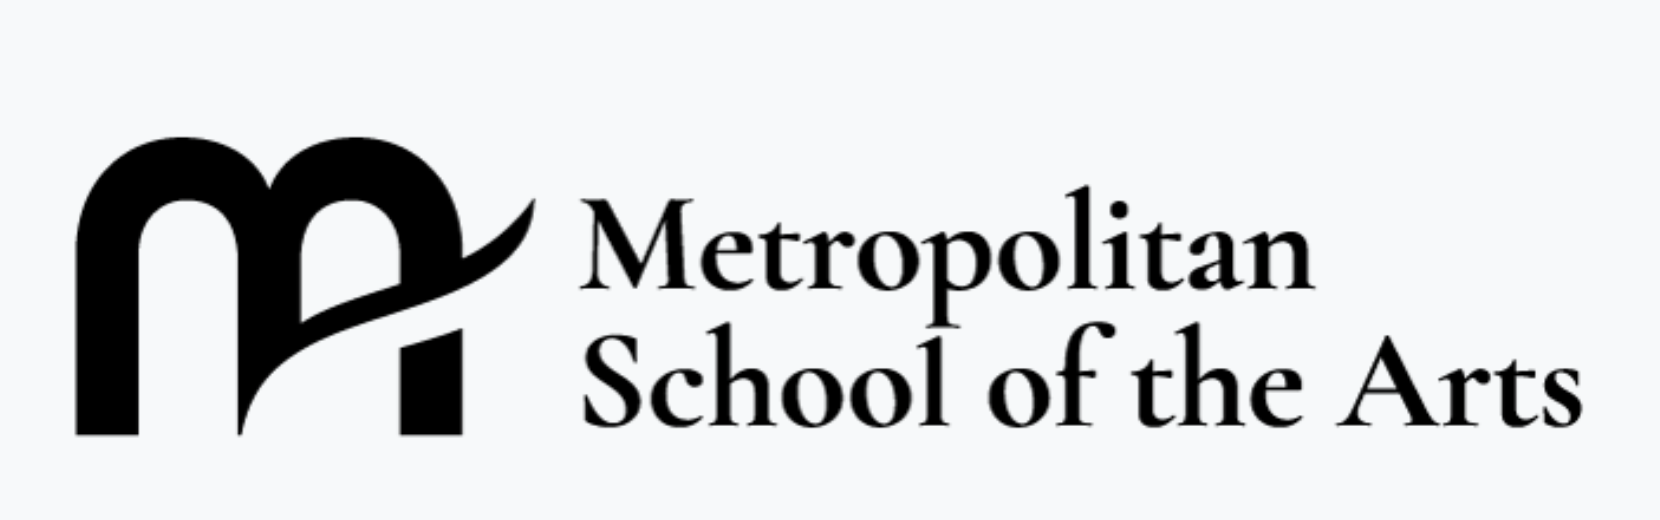 Metropolitan School of the Arts